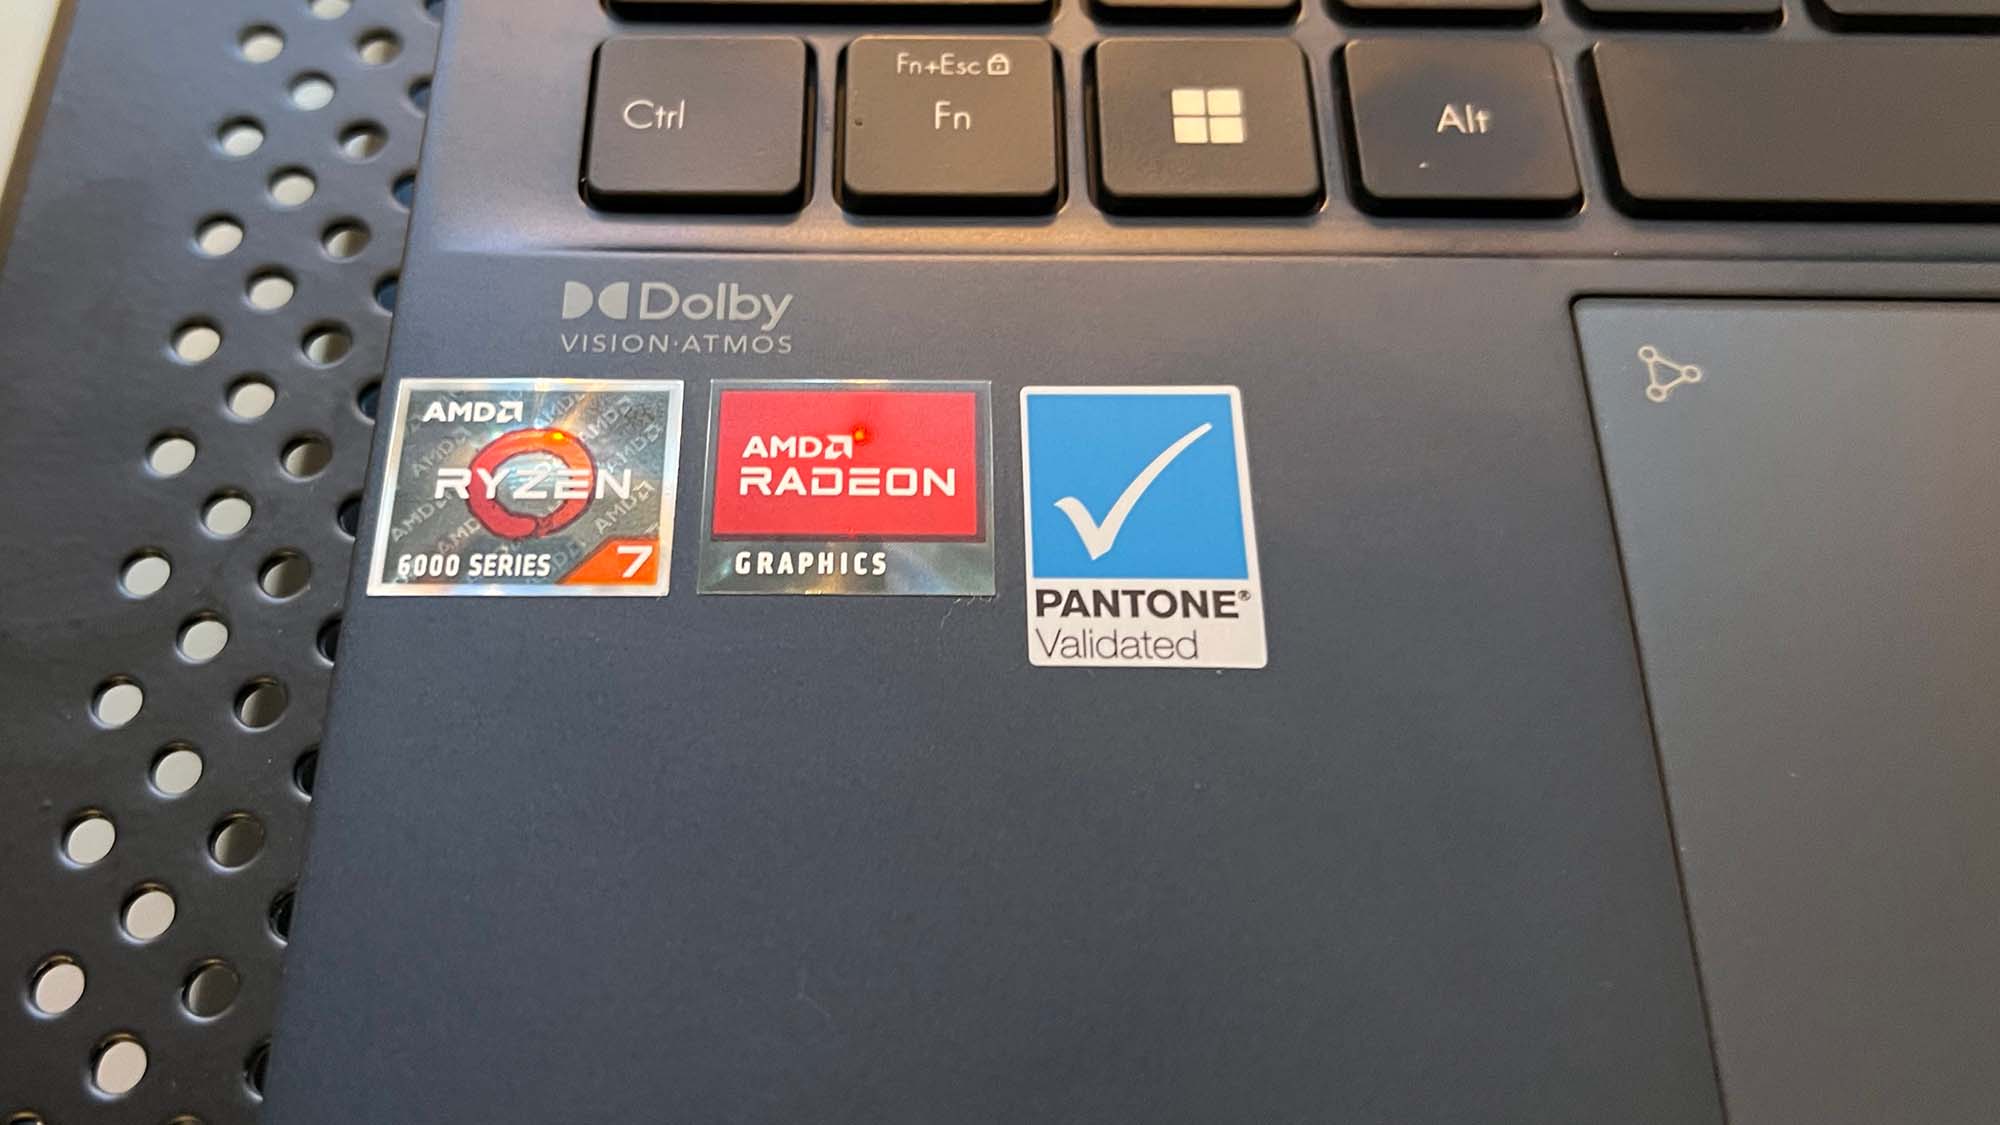 Um close dos adesivos com certificação AMD, Radeon e Pantone no Asus Zenbook S 13 OLED